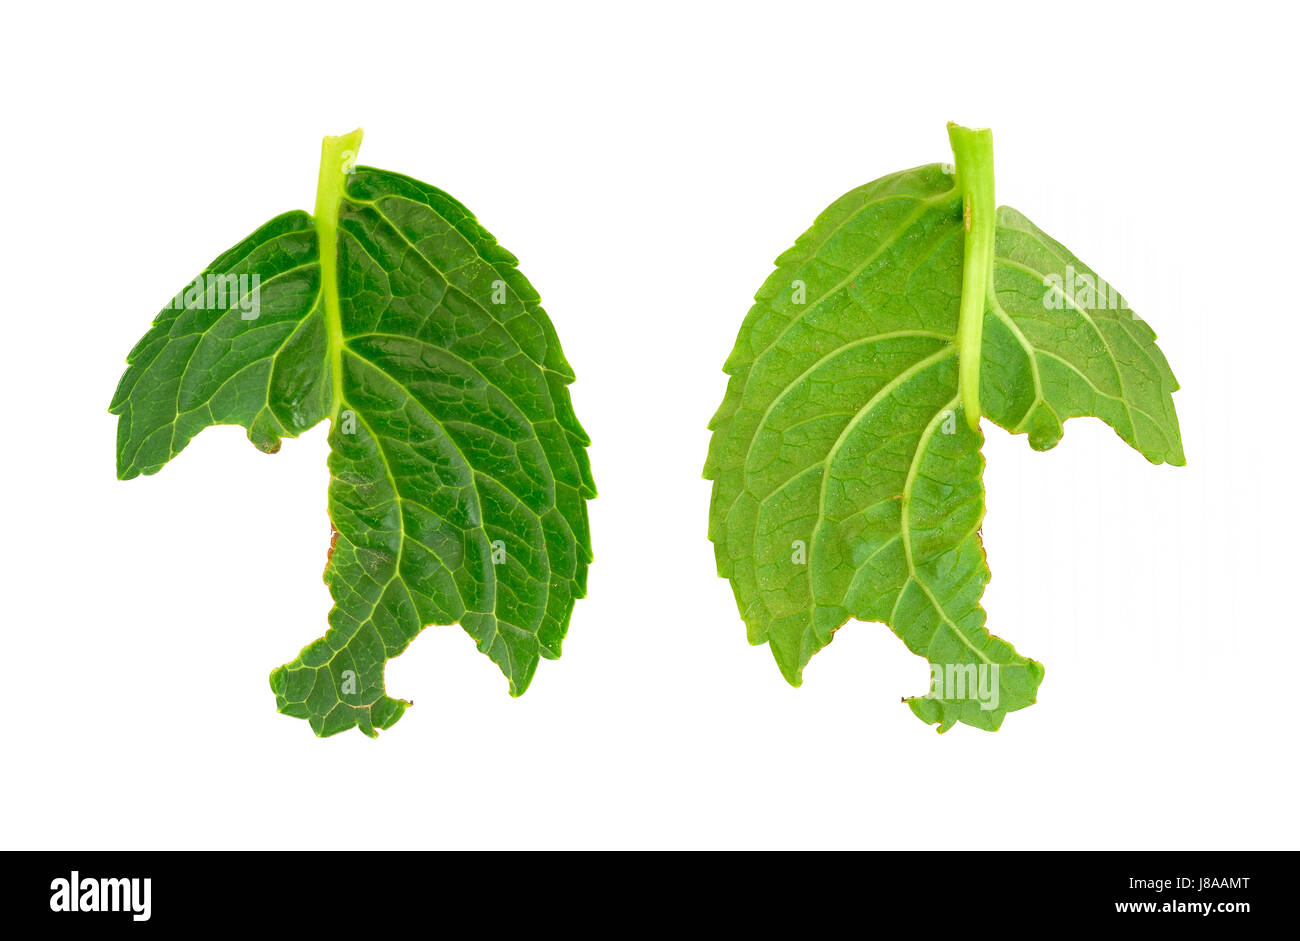 leaf, isolated, leaves, hydrangea, bait, slug, disease, illness, sickness, Stock Photo